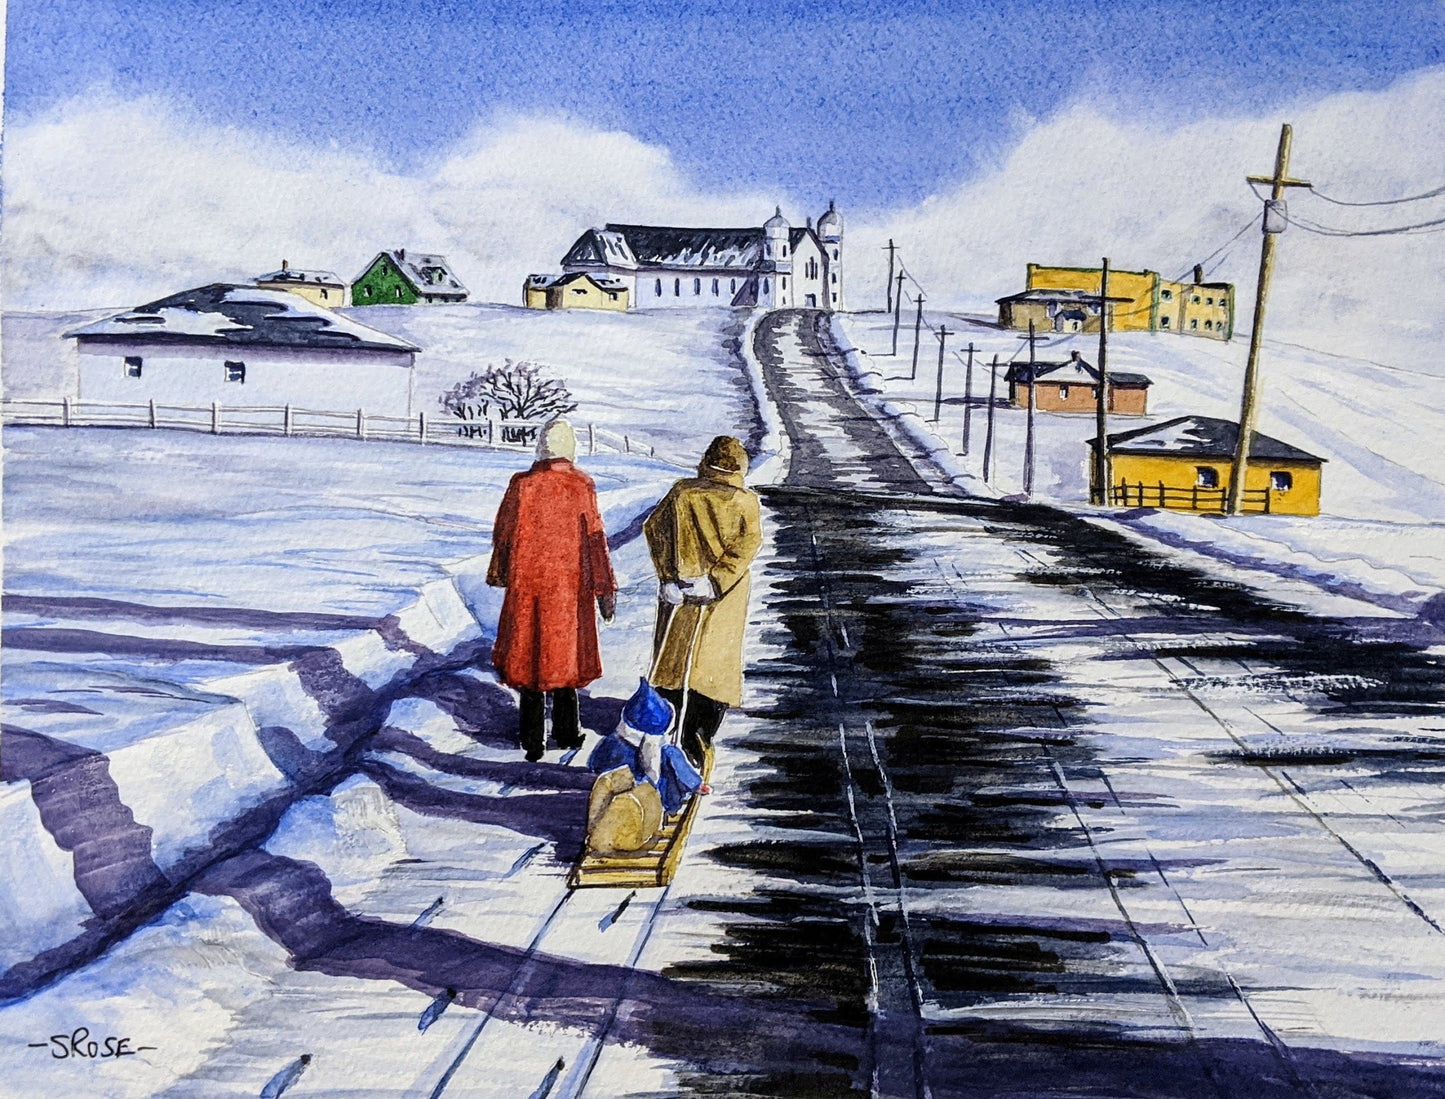 Winter Stroll, Bell Island, Newfoundland (9 x 7 inch print)